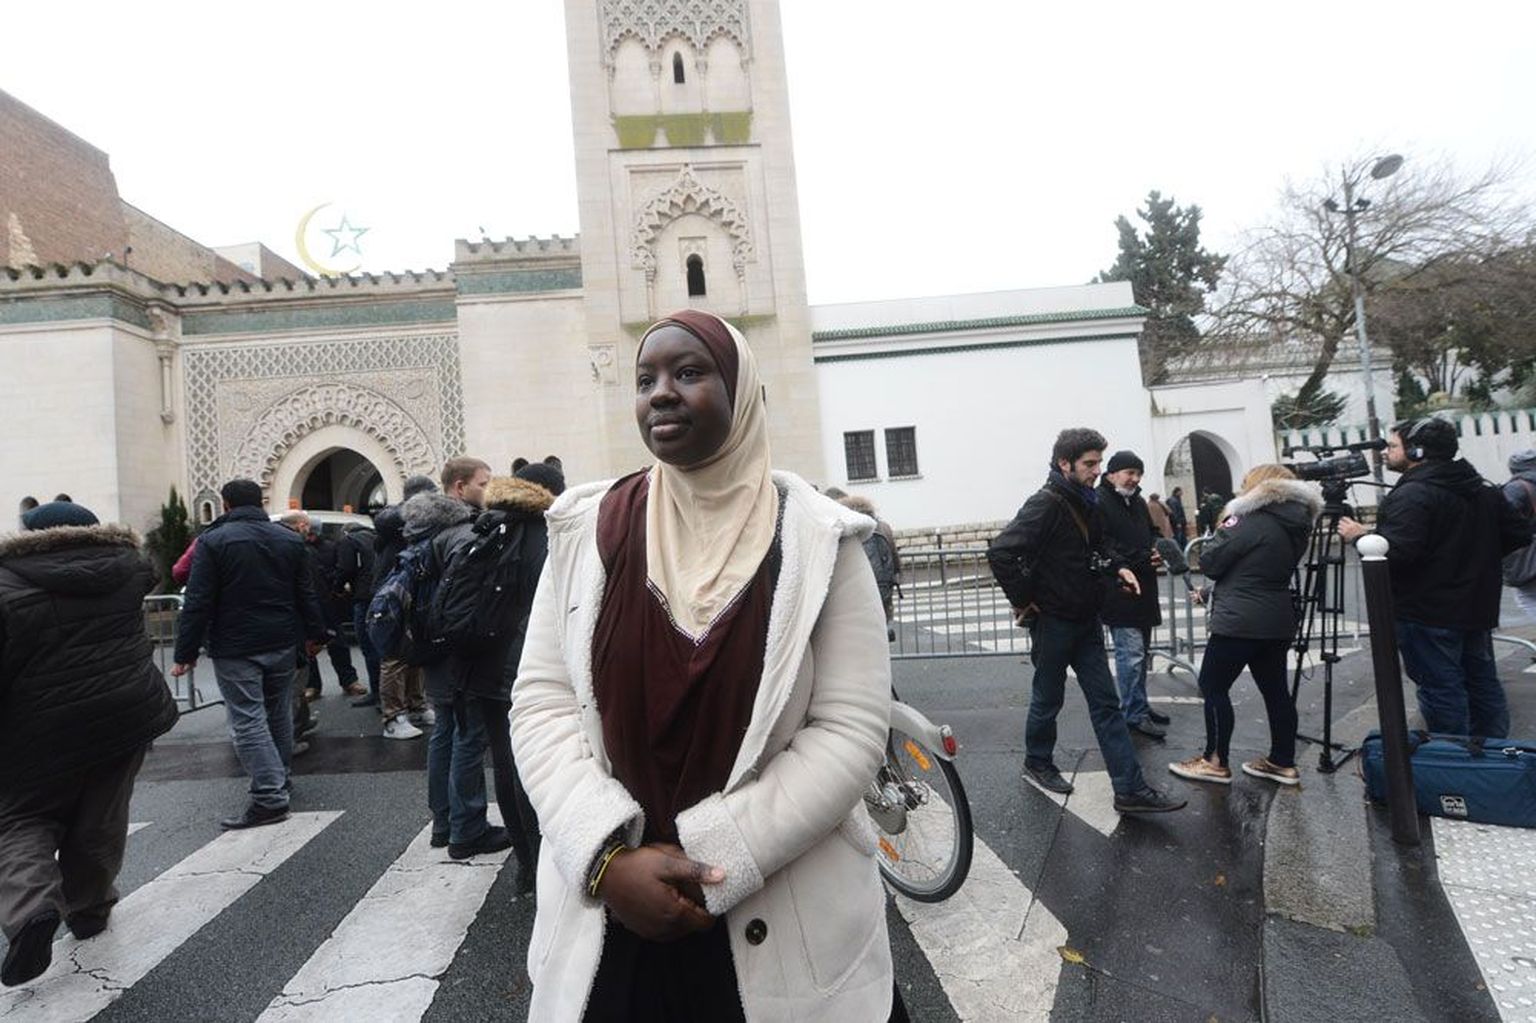 Selle nädala sündmused on Amite hinges vallandanud hirmu, et Prantsusmaal nähakse temas tema usu pärast edaspidi terroristi.